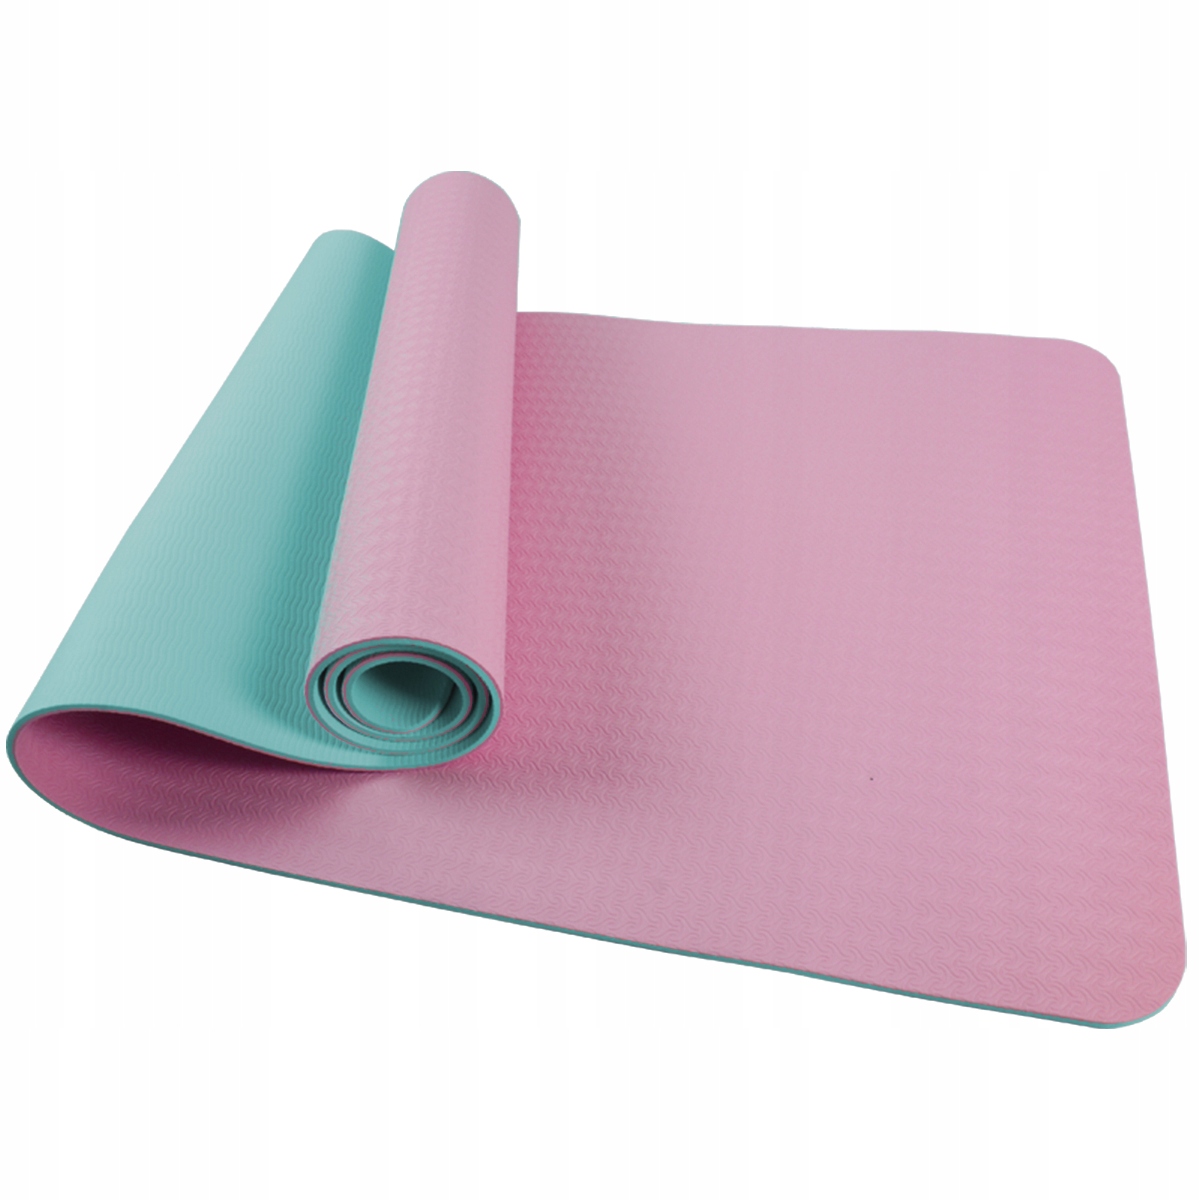  (мат) для йоги и фитнеса SportVida TPE розовый, 183х61х0,4 см .